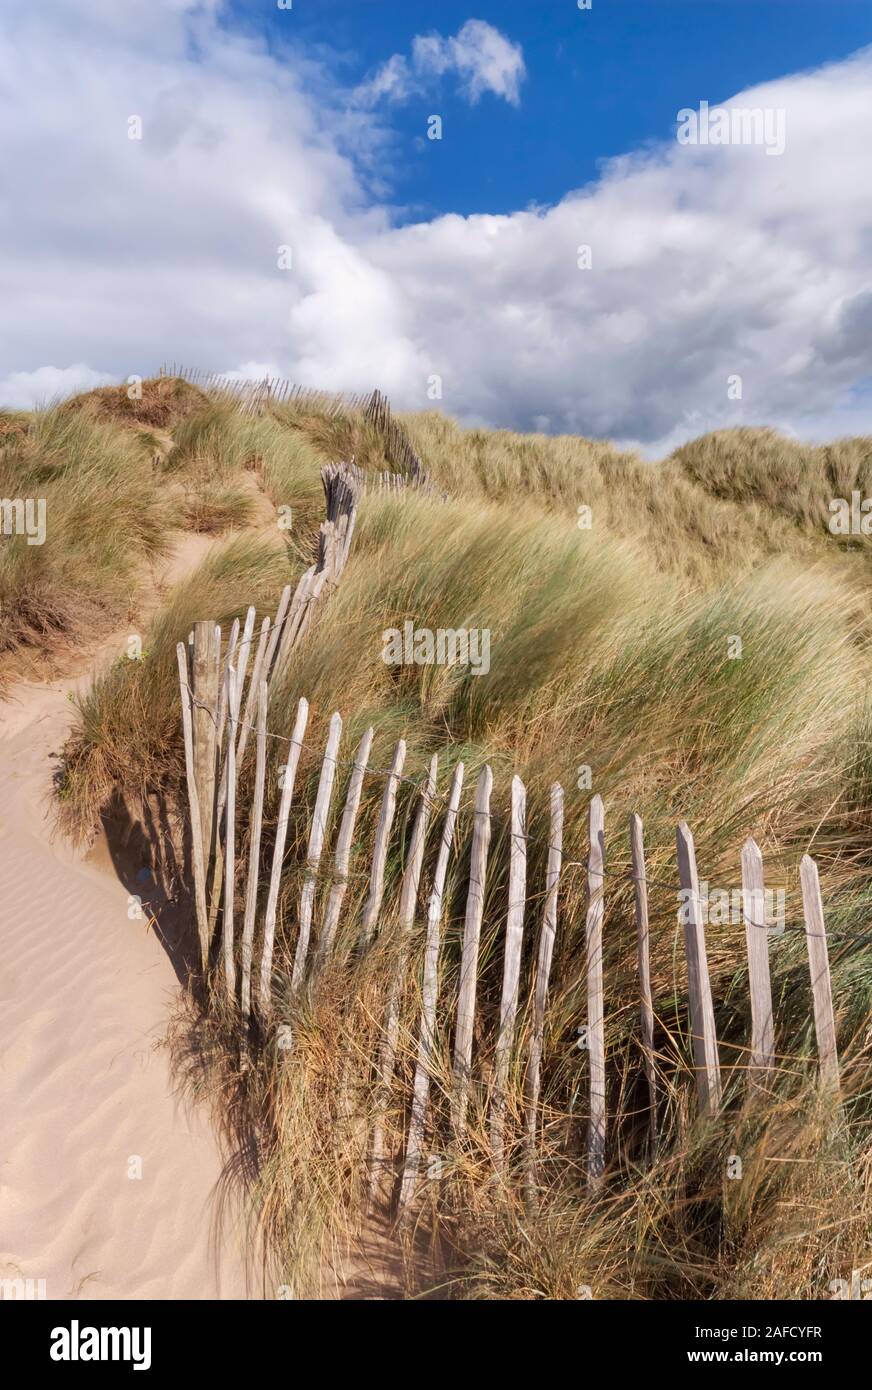 Northam Burrows Country Park, dune di sabbia e erbe di marram con recinzioni, North Devon, South West, UK Foto Stock